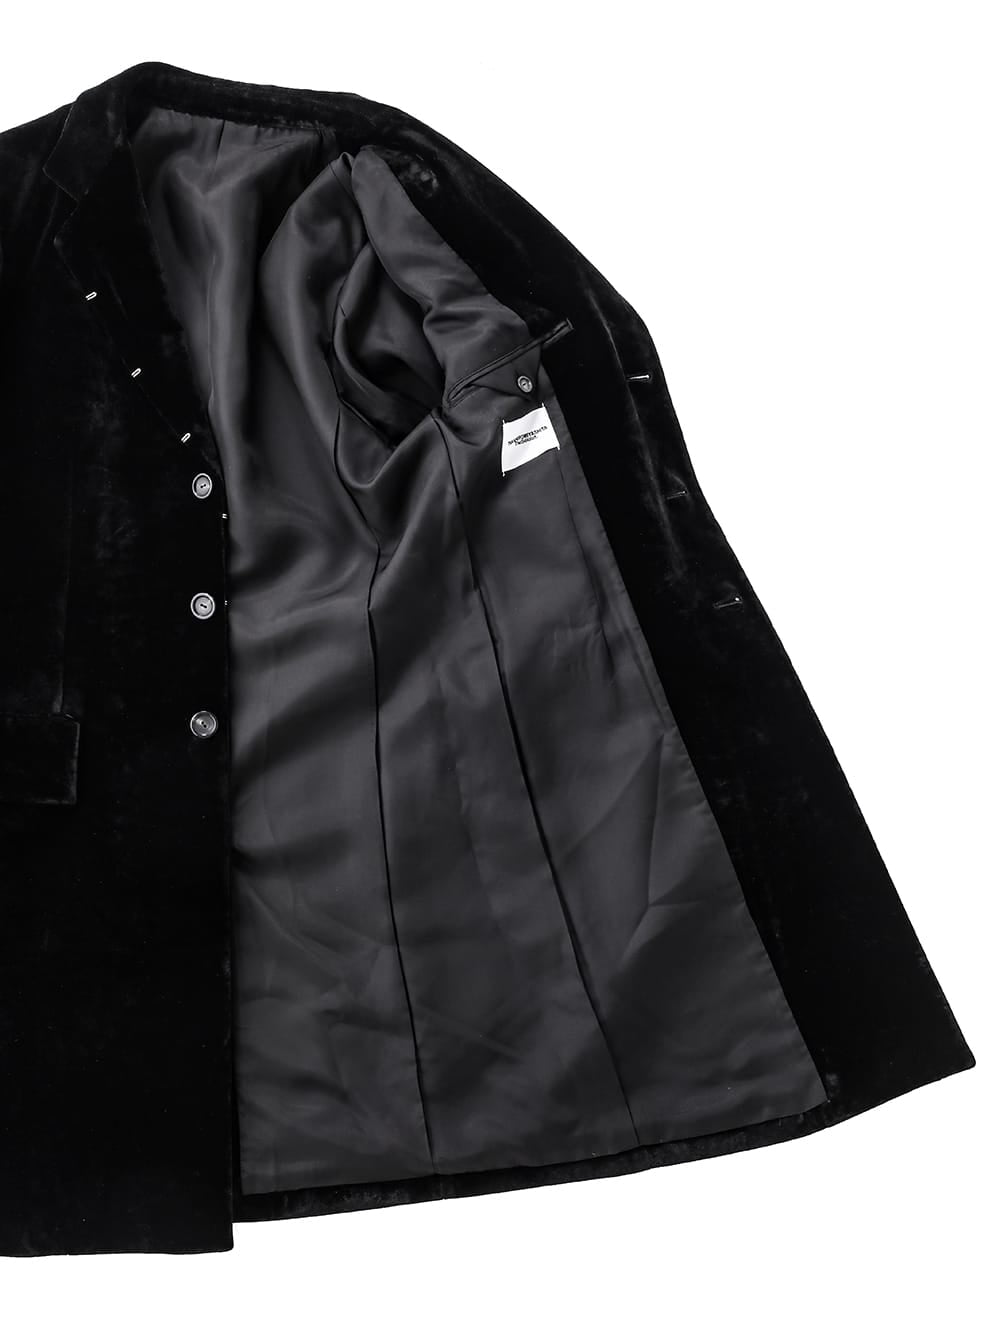 right - left chesterfield jacket.(velvet)